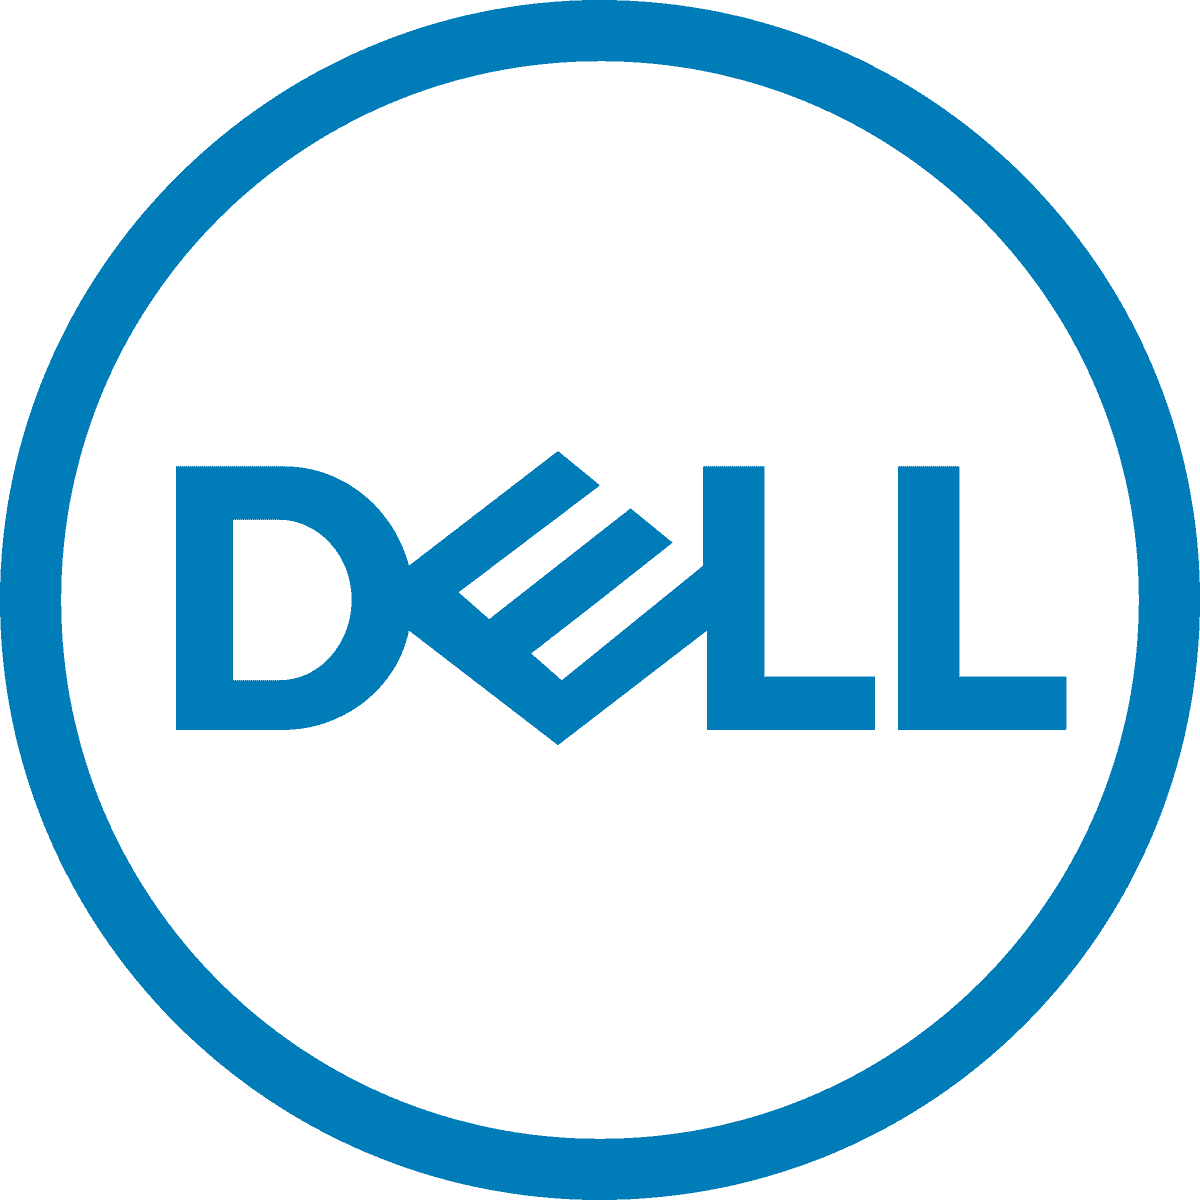 Dell_logo_2016_1646250668